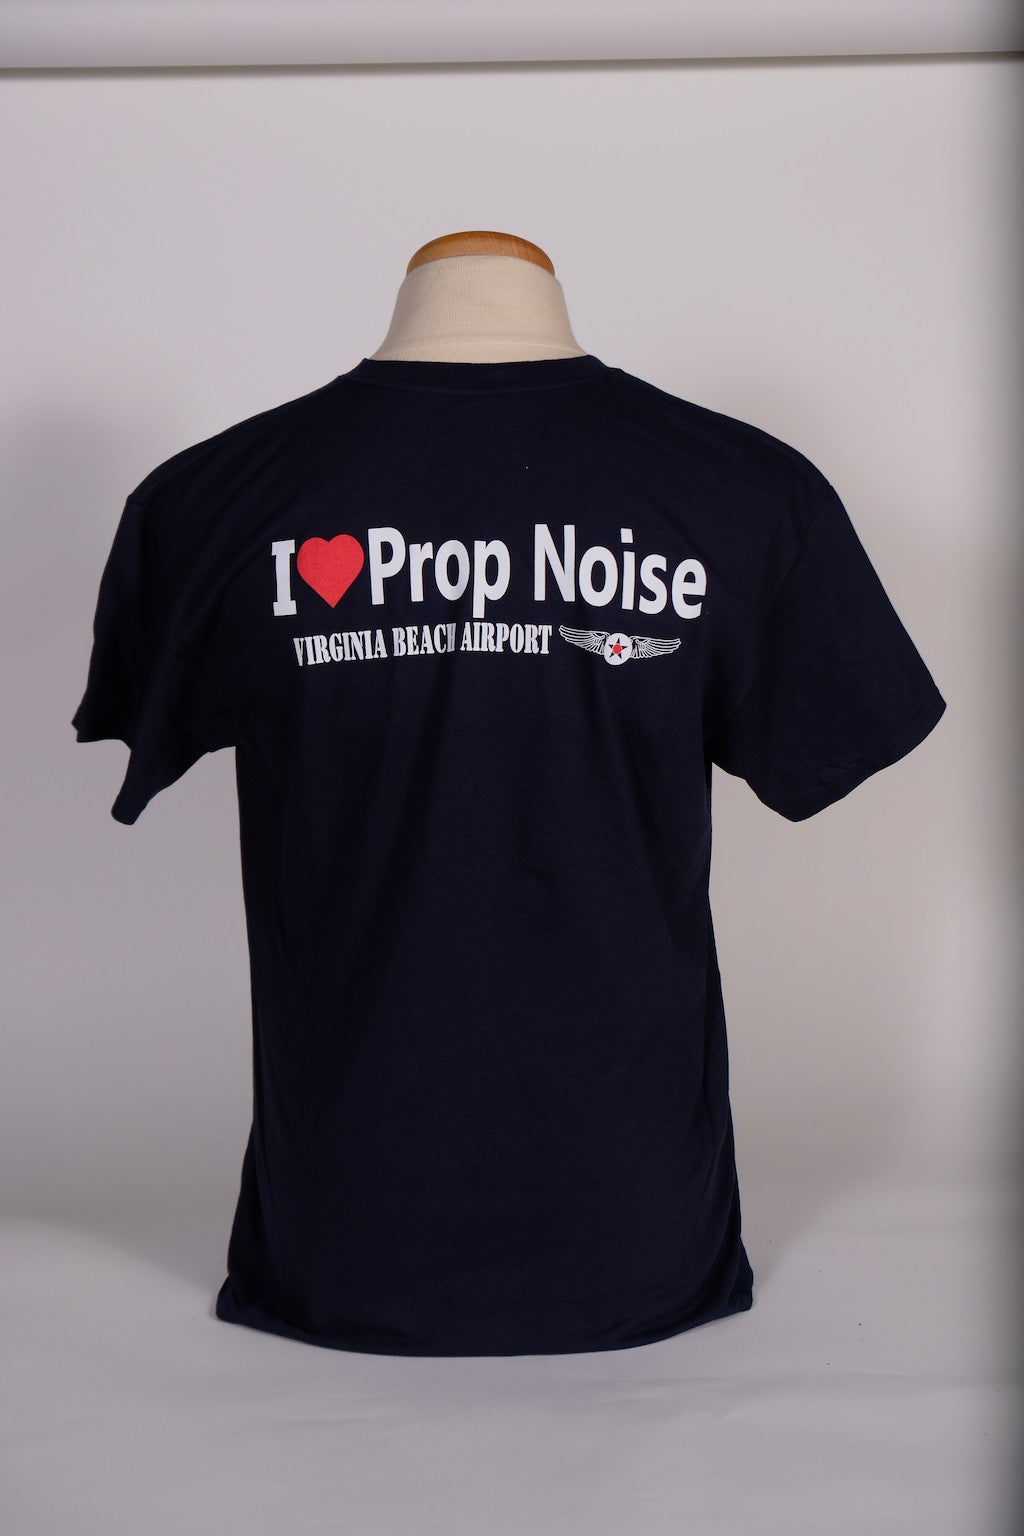 Prop Noise T-Shirt